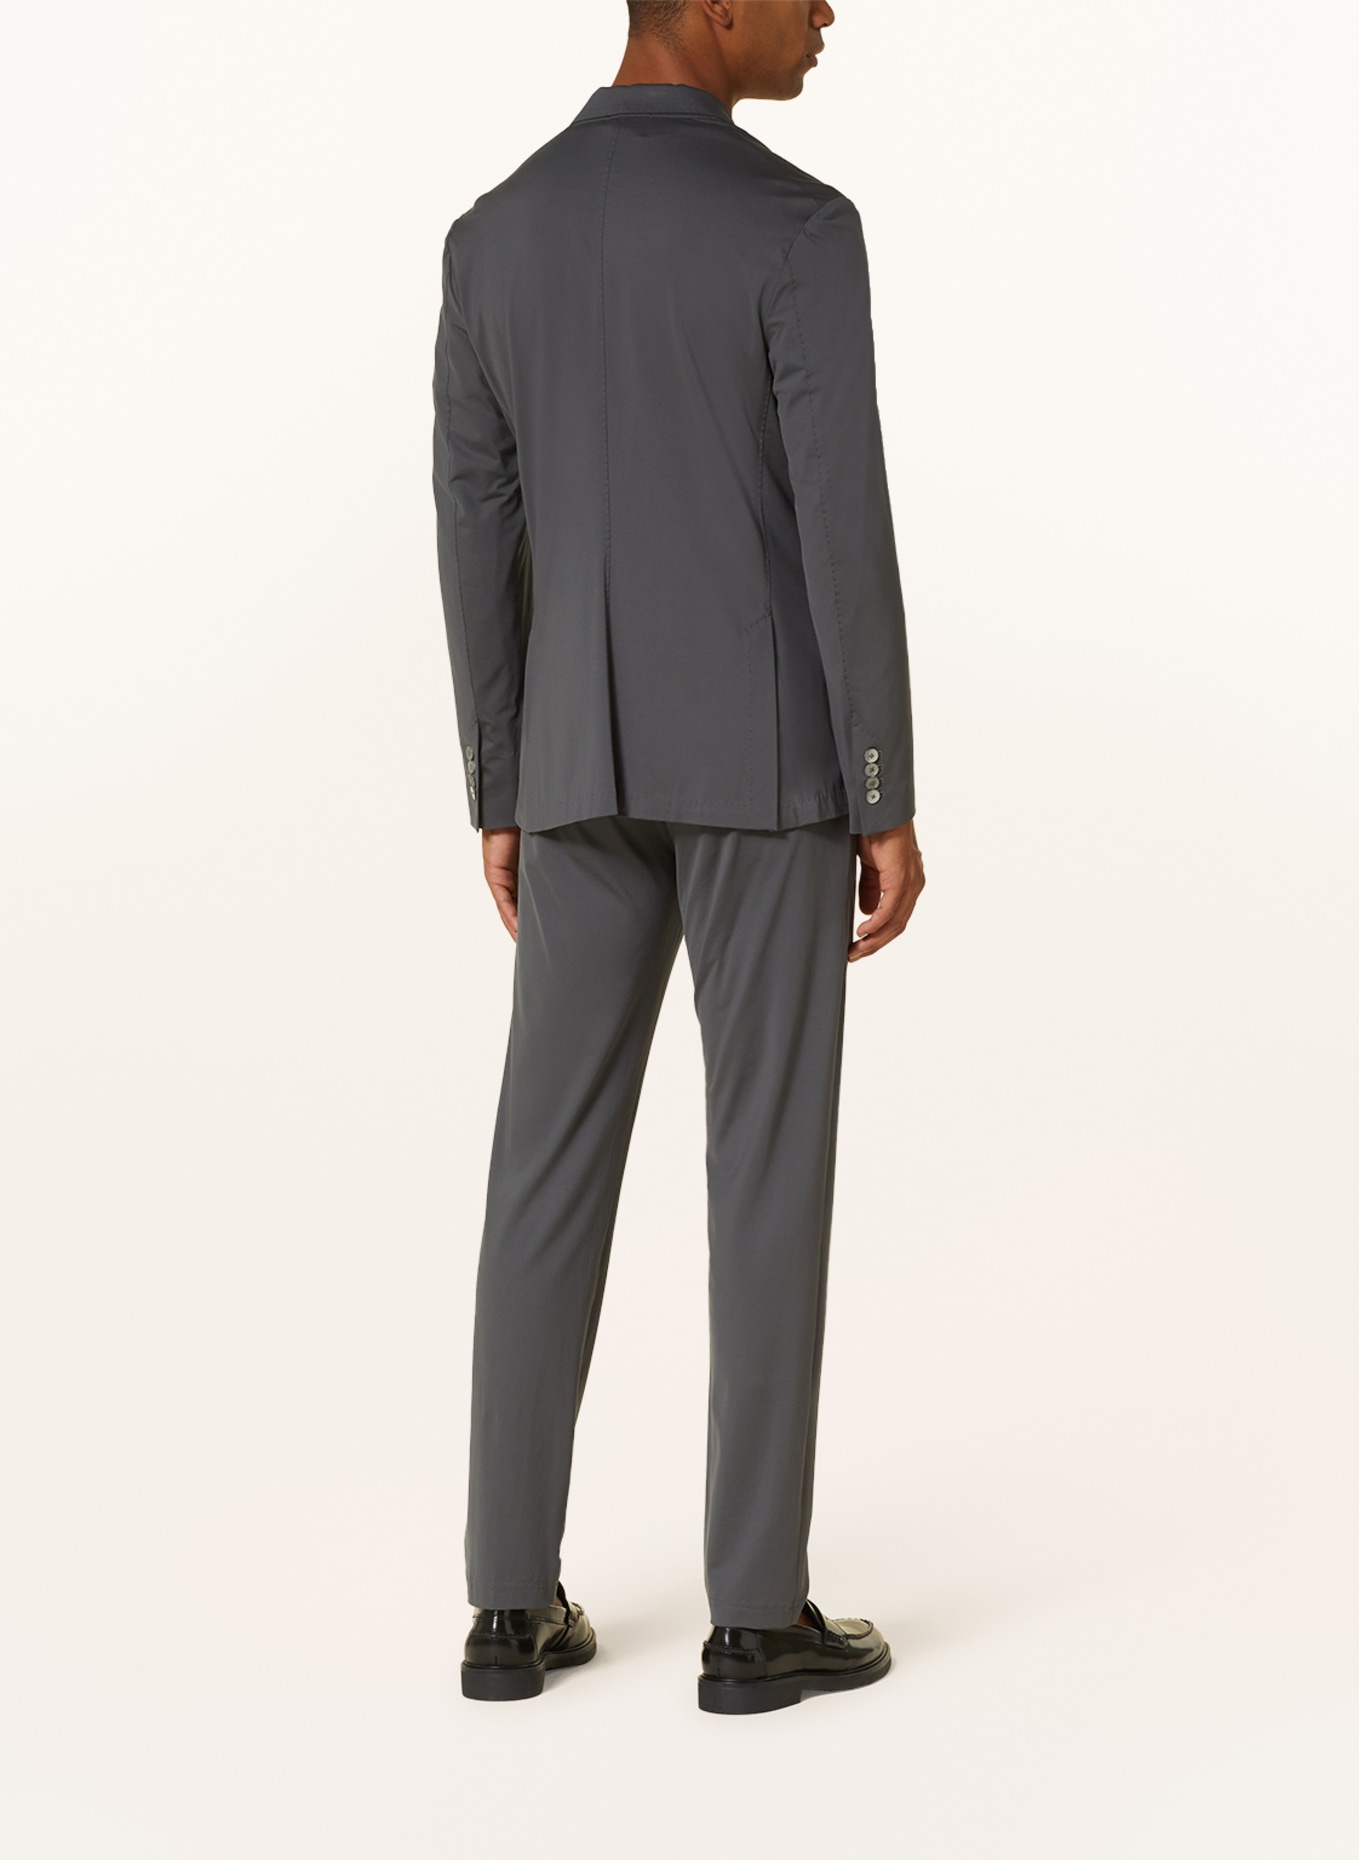 Stefan Brandt Jersey jacket ADRIAN SUPER extra slim fit, Color: GRAY (Image 3)